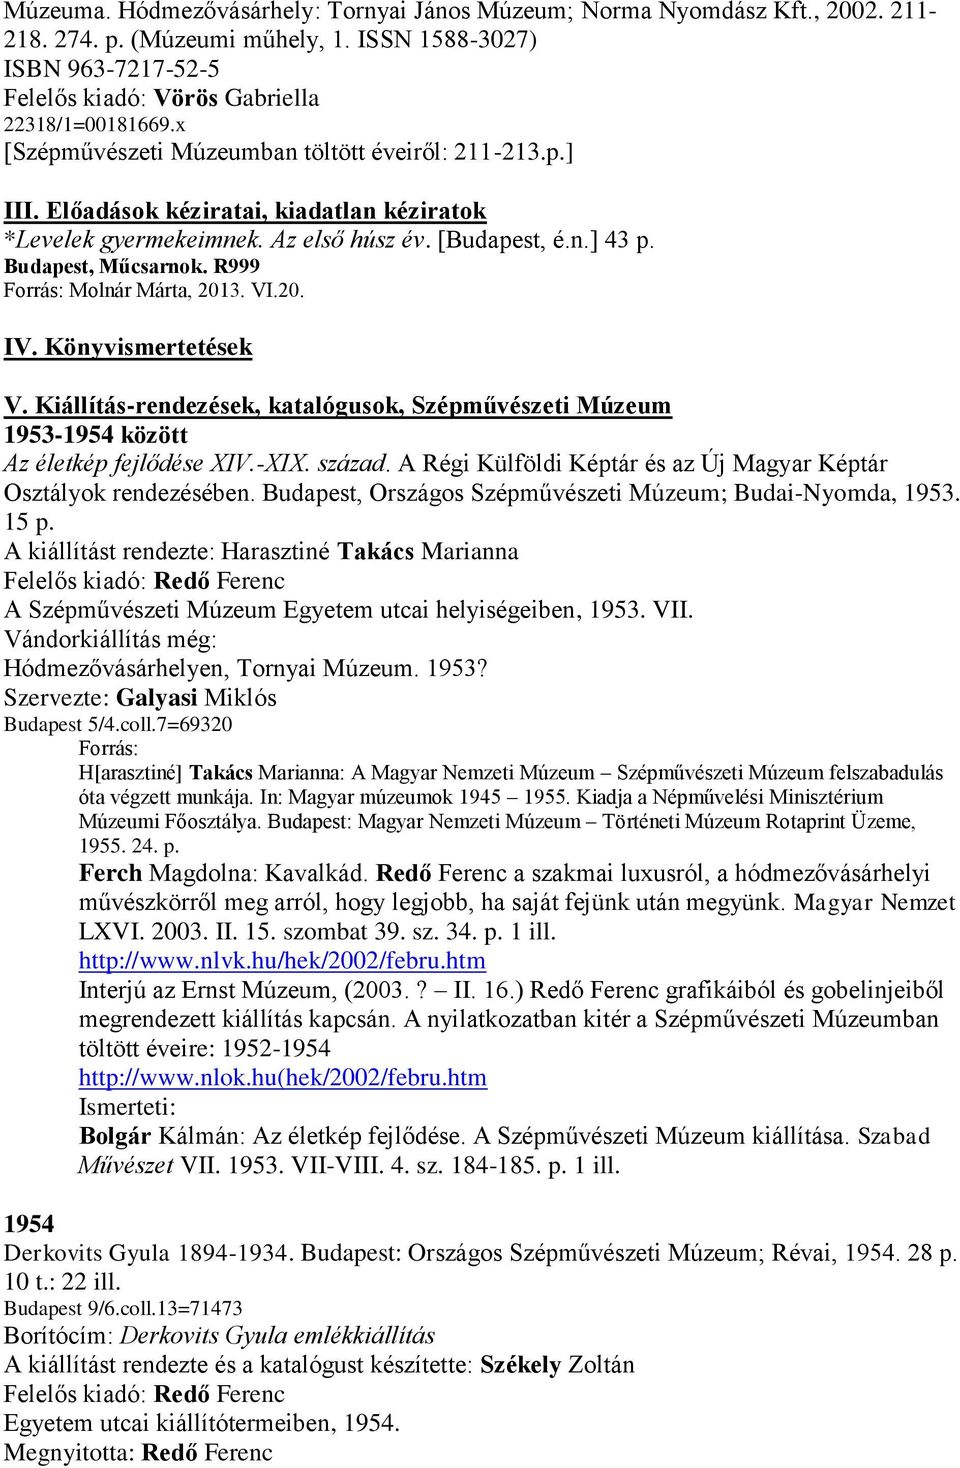 R999 Forrás: Molnár Márta, 2013. VI.20. IV. Könyvismertetések V. Kiállítás-rendezések, katalógusok, Szépművészeti Múzeum 1953-1954 között Az életkép fejlődése XIV.-XIX. század.